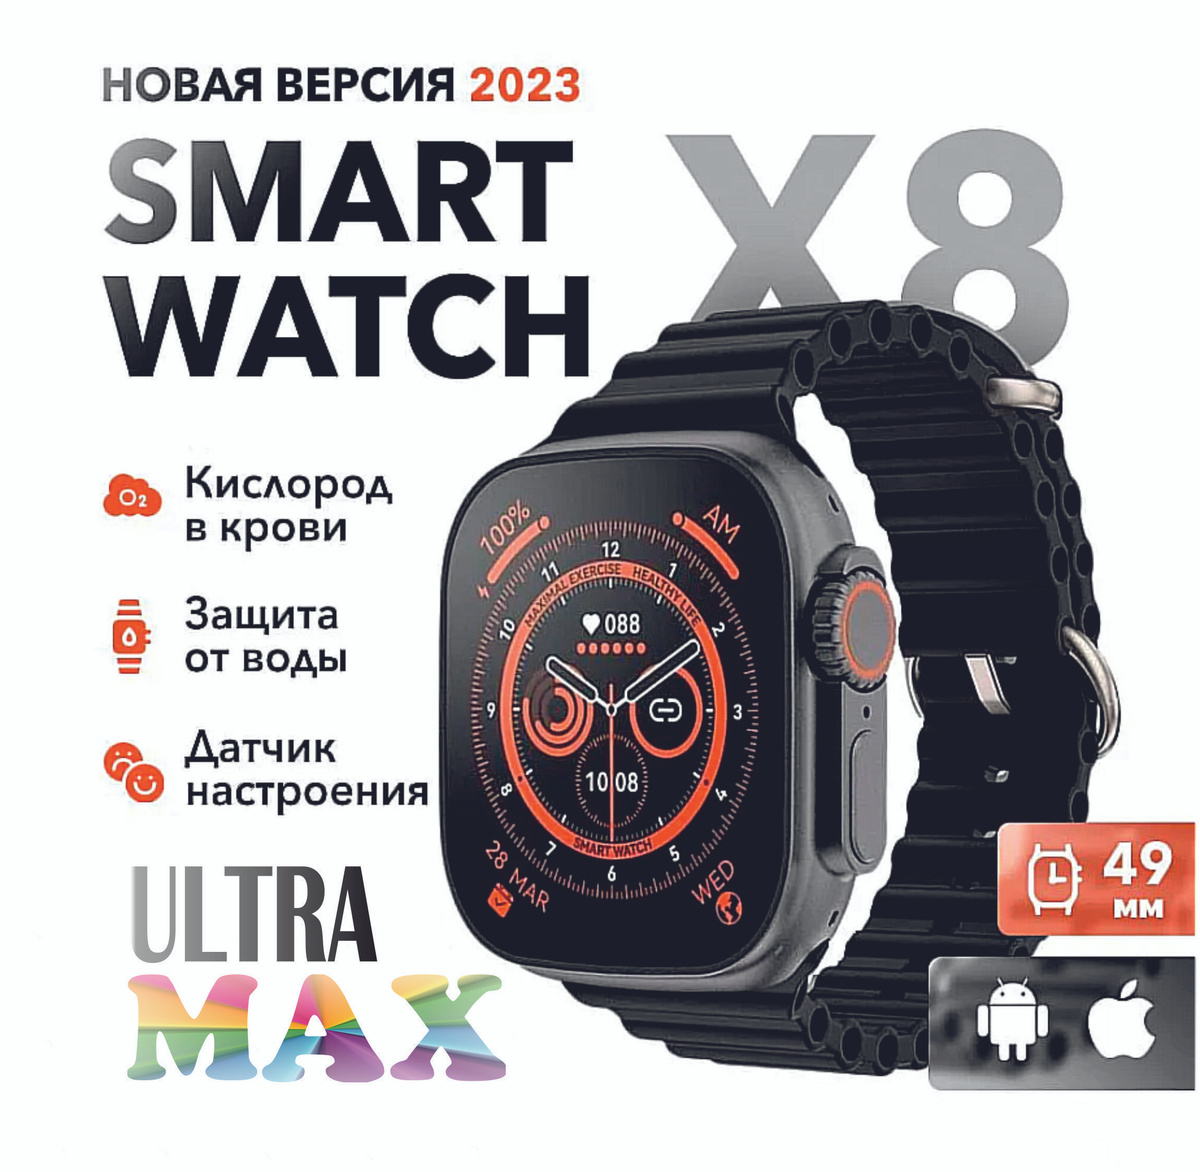 Смарт умные часы Smart Watch X8 Ultra 49мм  X8 ULTRA - это влагостойкие умные часы, степень влагозащиты IP67, которые вы можете носить, даже когда моете руки или в дождливые дни, однако не рекомендуется в них плавать. Устройство имеет датчик сердечного ритма, который собирает данные о нашем сердечном ритме в течение 24 часов. Эта модель также помогает вам контролировать свой сон, благодаря полному мониторингу сна. Часы также имеют шагомер и позволяют нам контролировать и оценивать количество сожженных калорий в течение дня.  В дополнение к упомянутым выше особенностям. Умные часы имеют GPS, а так же поддерживают вызов по Bluetooth, они оснащены динамиком и микрофоном, что позволяет совершать звонки непосредственно через смарт-часы. Smart Watch также поддерживают различные спортивные режимы, включая ходьбу, бег, езду на велосипеде, скалолазание, баскетбол, футбол и т. д.  Больший выбор циферблатов  Дополнительные варианты можно установить через приложение  Функционал  - 14 вариантов интерфейсов (+ дополнительные варианты можно установить через приложение)  - функциональное колесико для выбора интерфейса, просмотра меню  - функциональная нижняя кнопка (включение/выключение экрана, кнопка «назад»)  - пульсометр  - шагомер  - тонометр  - счётчик потраченных калорий